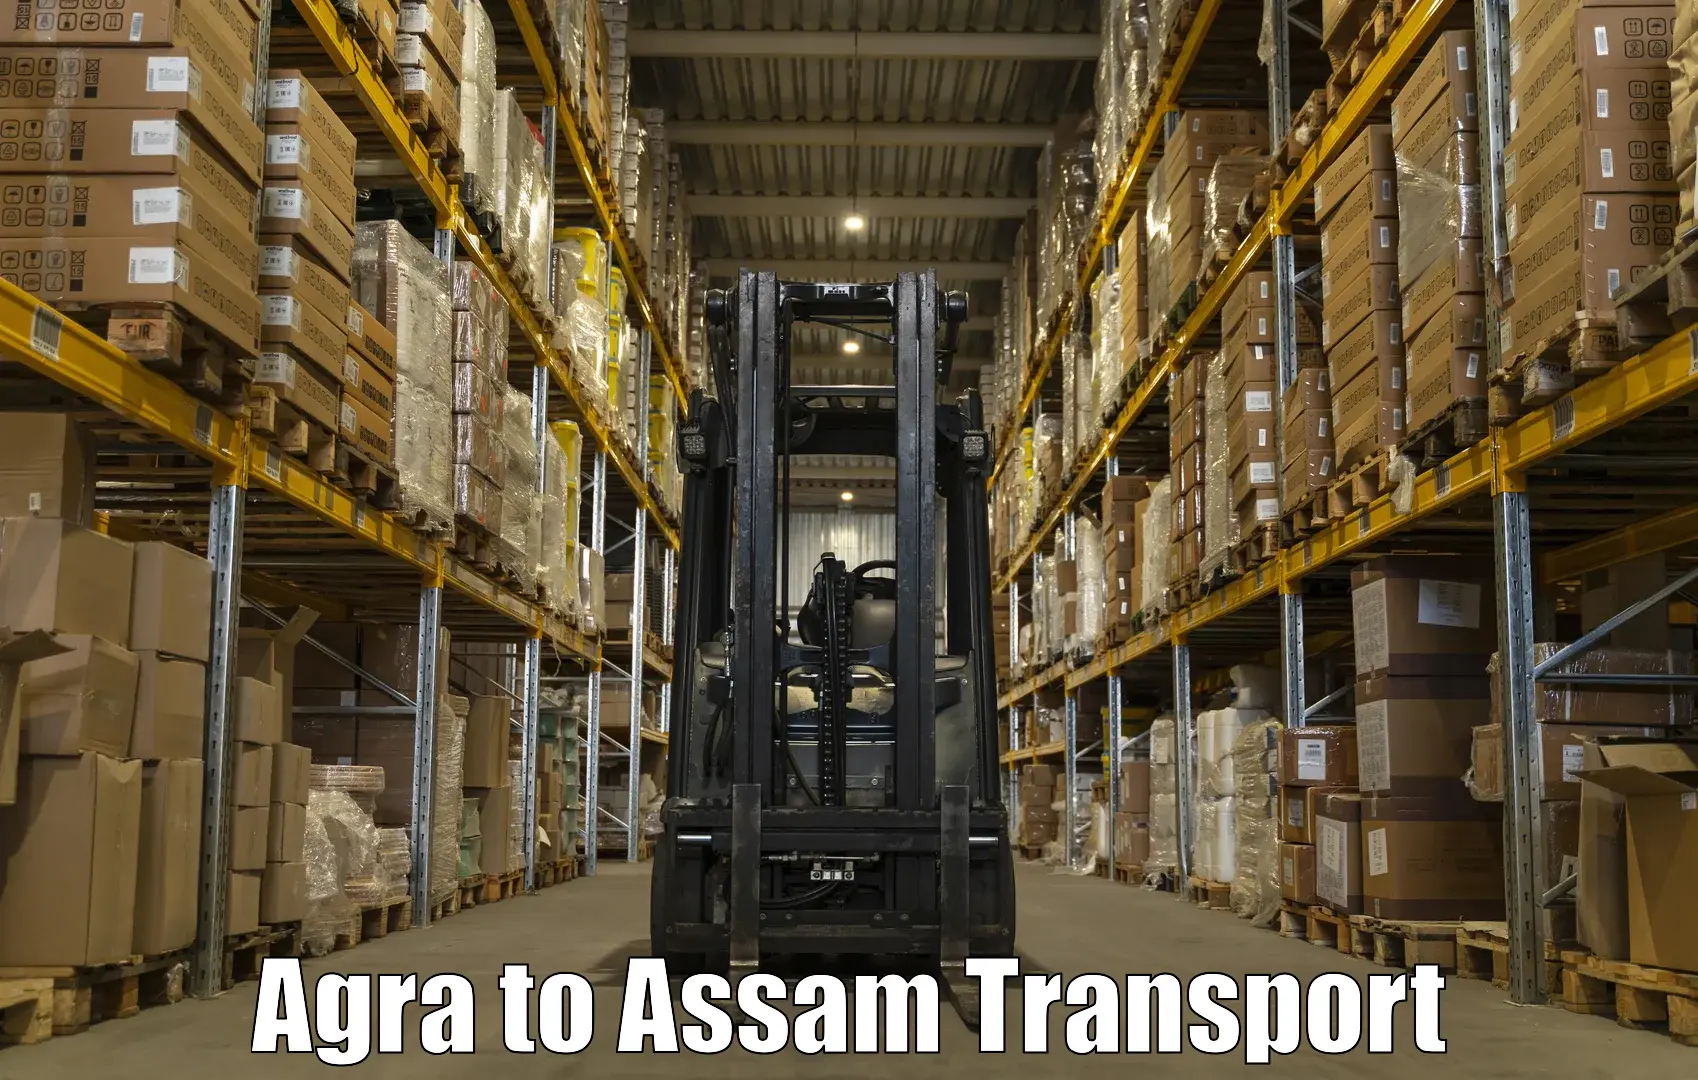 International cargo transportation services Agra to Darranga Mela